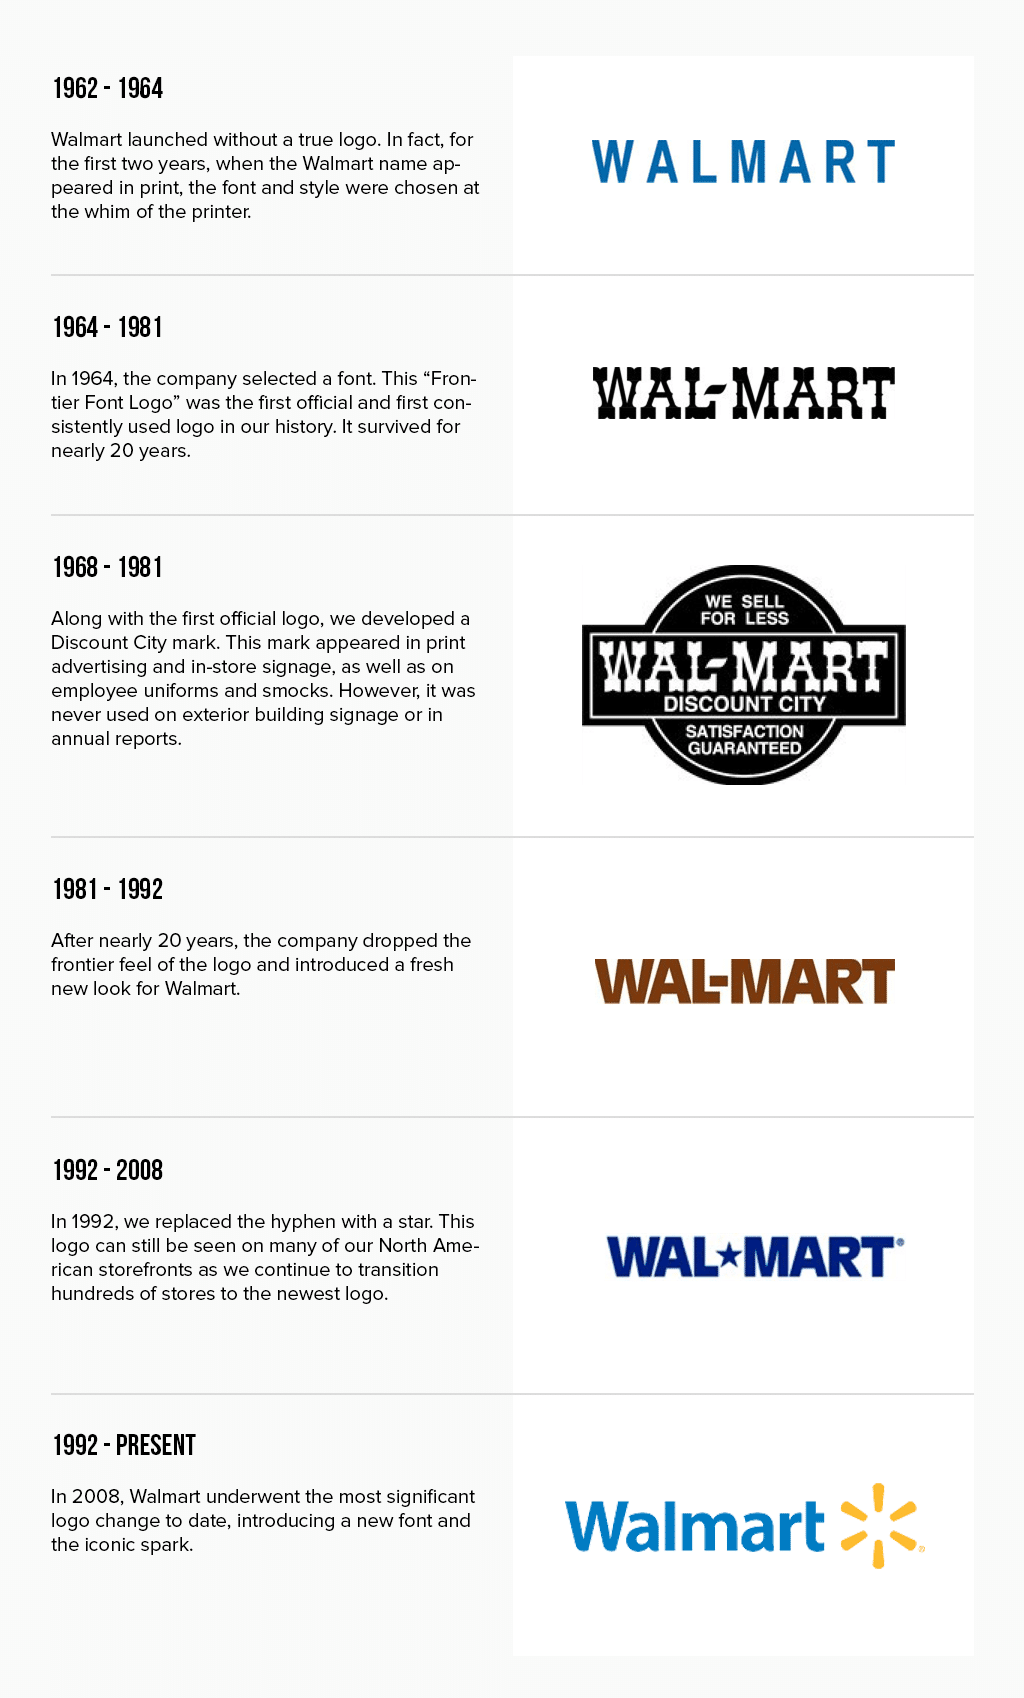 Evoluzione del logo Walmart